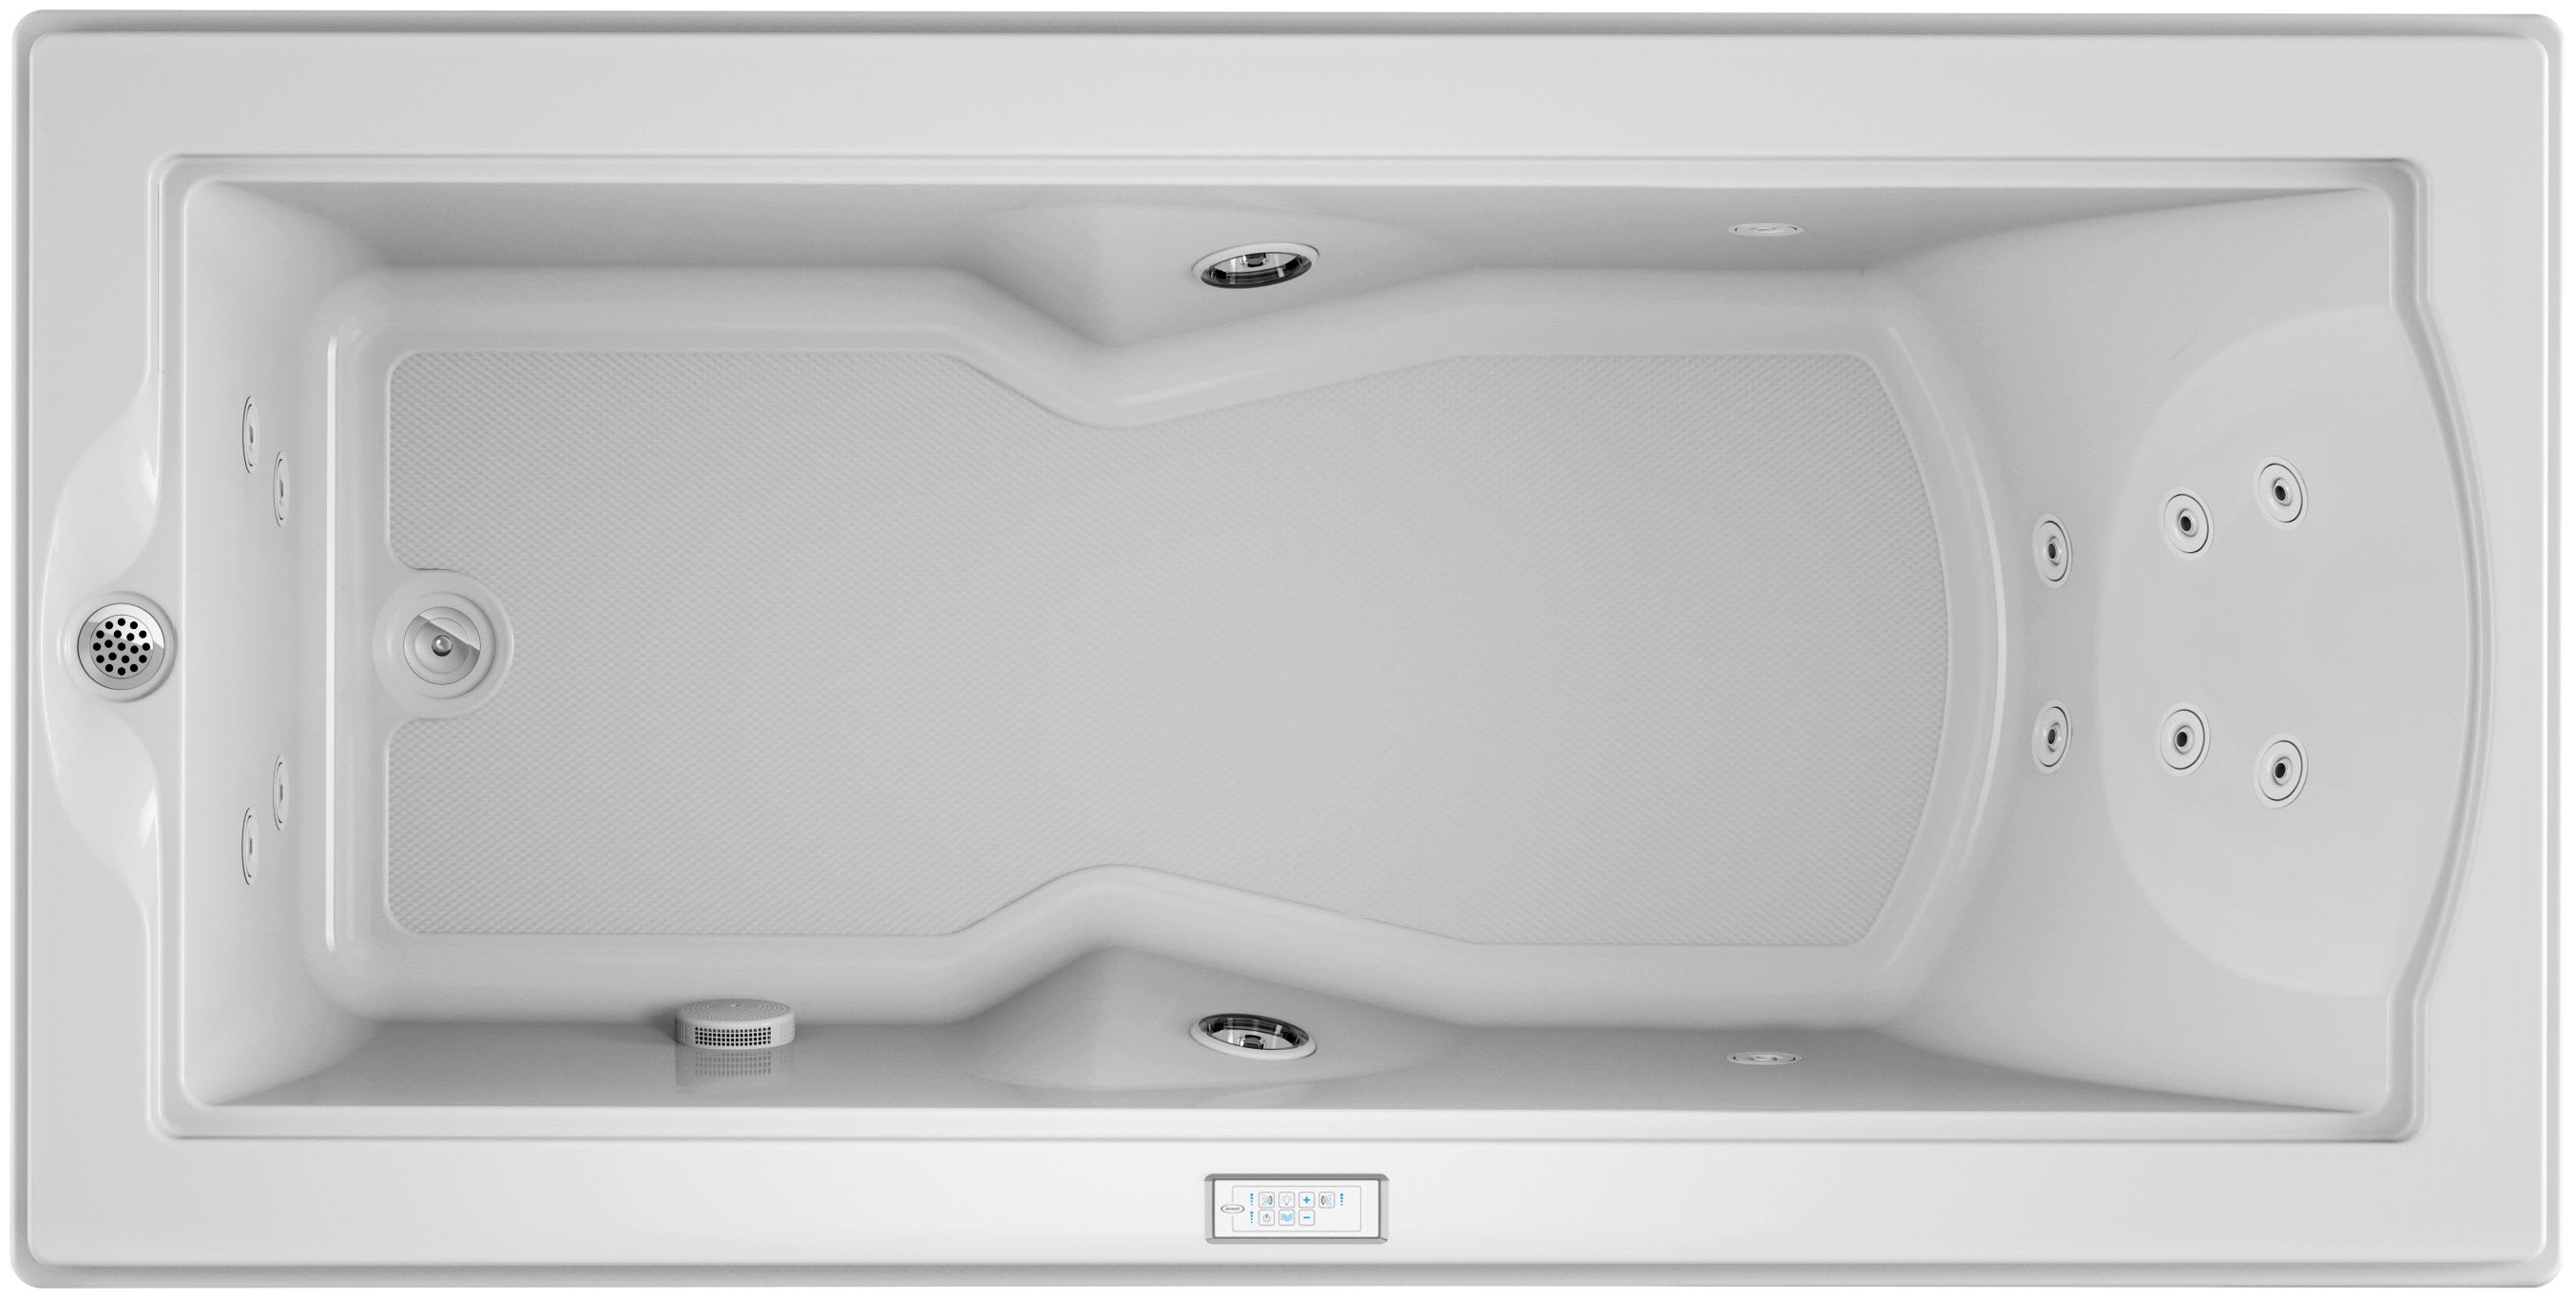 Fuzion Drop In Luxury Whirlpool Bathtub, 72 X 36 Whirlpool Bathtub